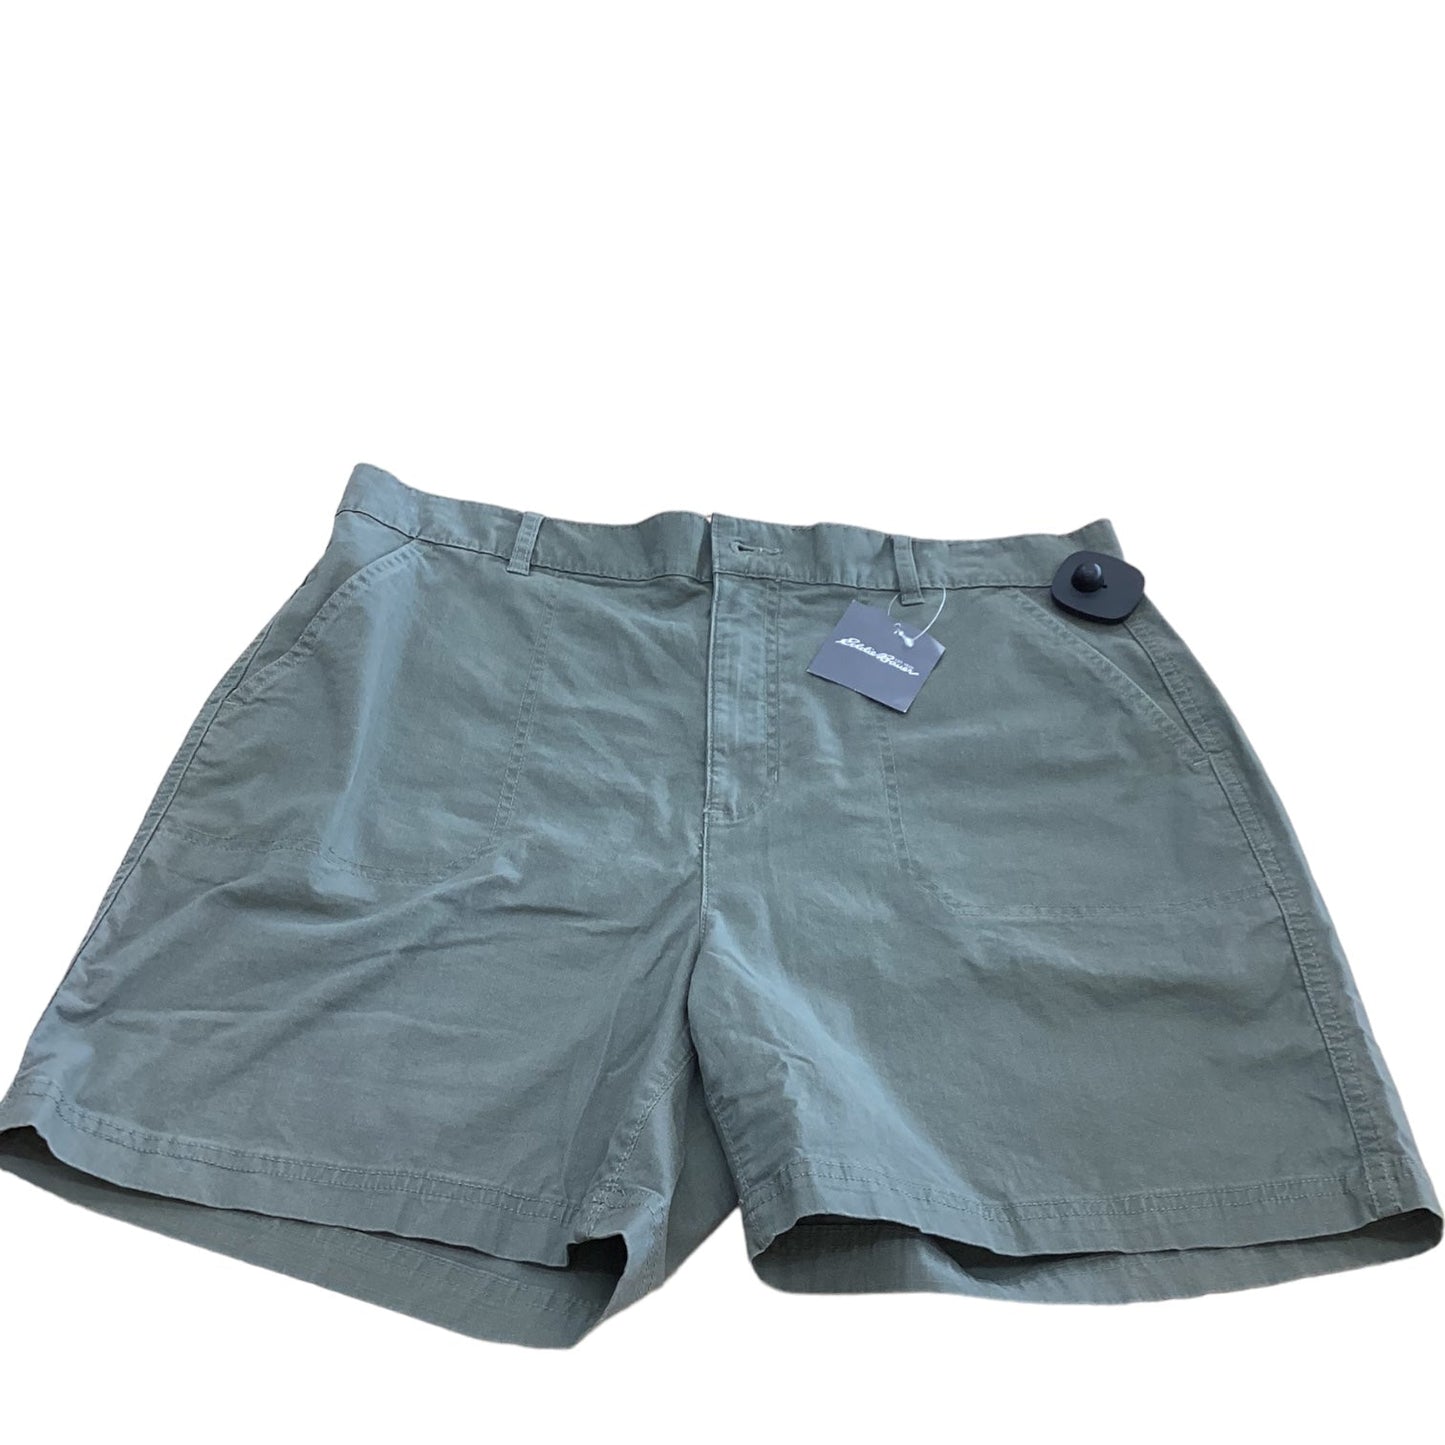 Green Shorts Eddie Bauer, Size 12